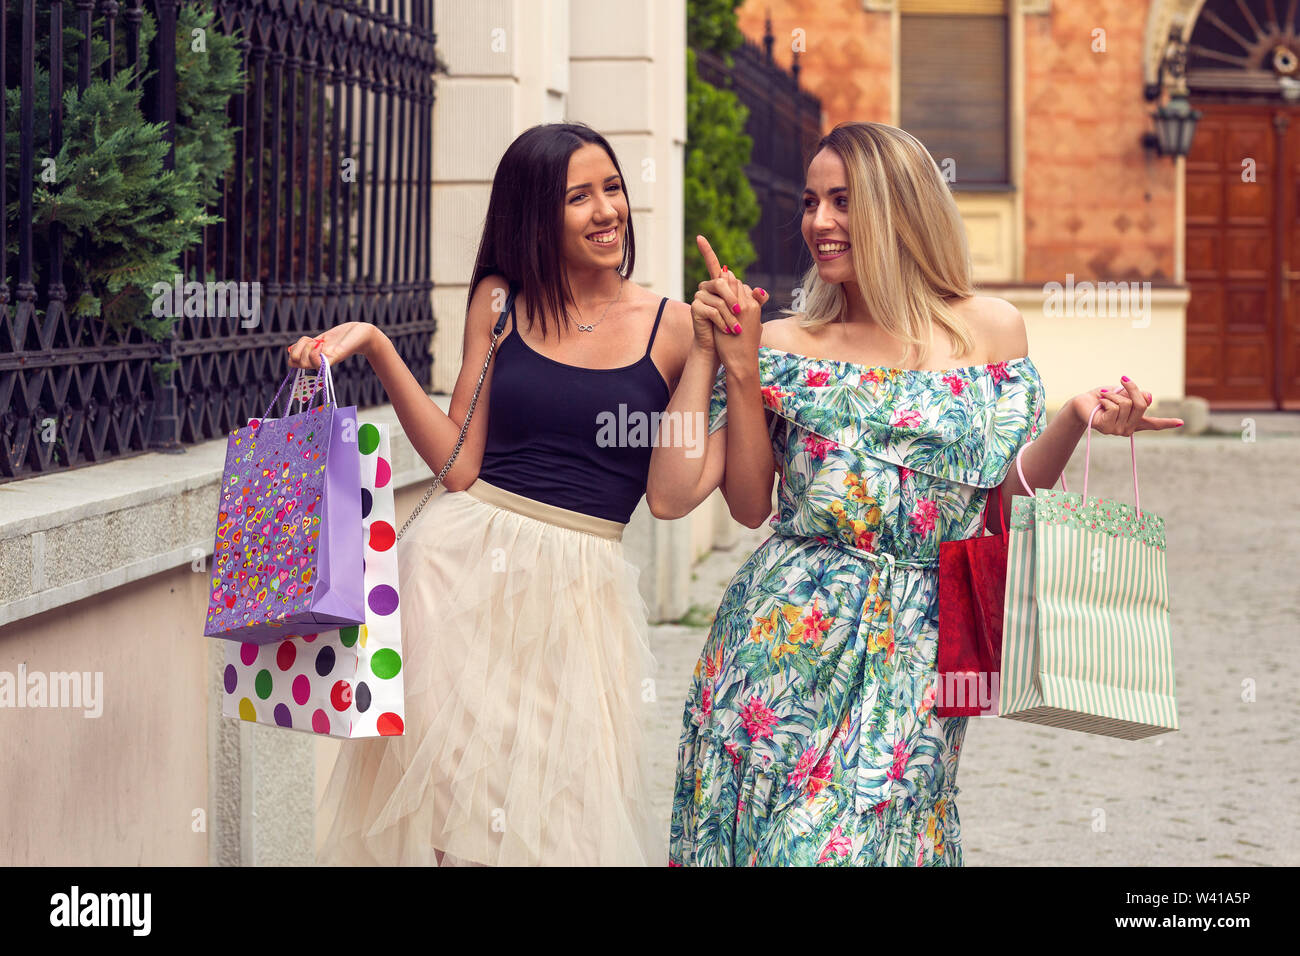 Felicidad, amigos, venta y divertido concepto-sonriente joven novia con bolsas de la compra. Foto de stock